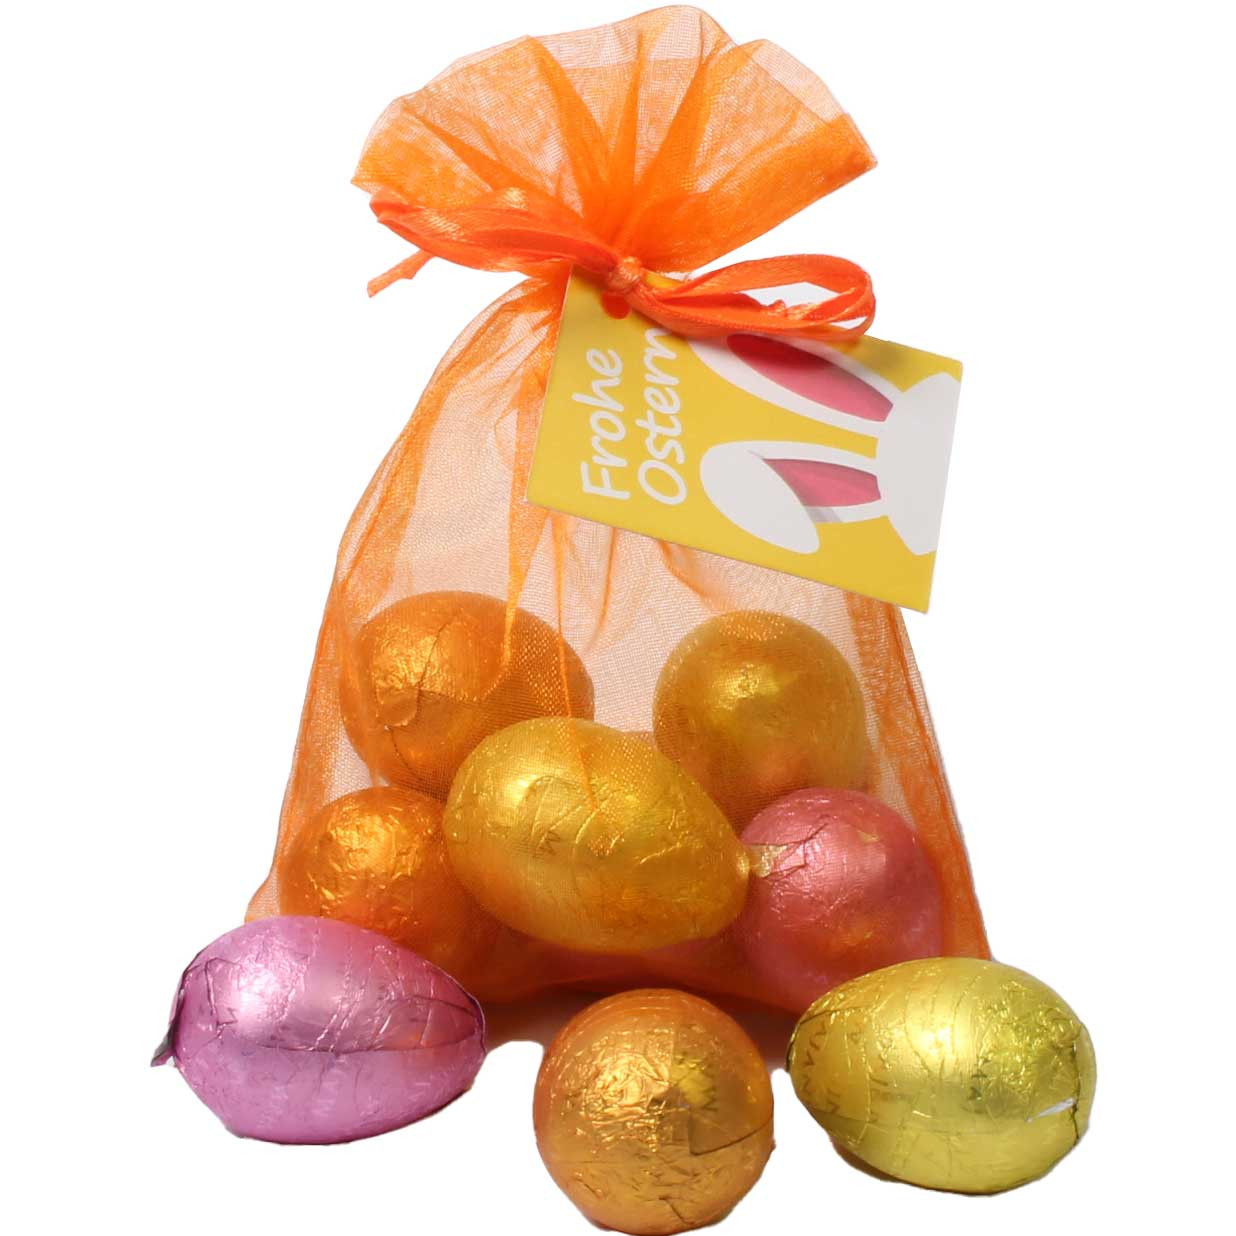 Uova di Pasqua Uova Maxi 6 pezzi in sacchetto di organza arancione - Uova di Pasqua al cioccolato, Italia, cioccolato italiano, Cioccolato con nocciola - Chocolats-De-Luxe